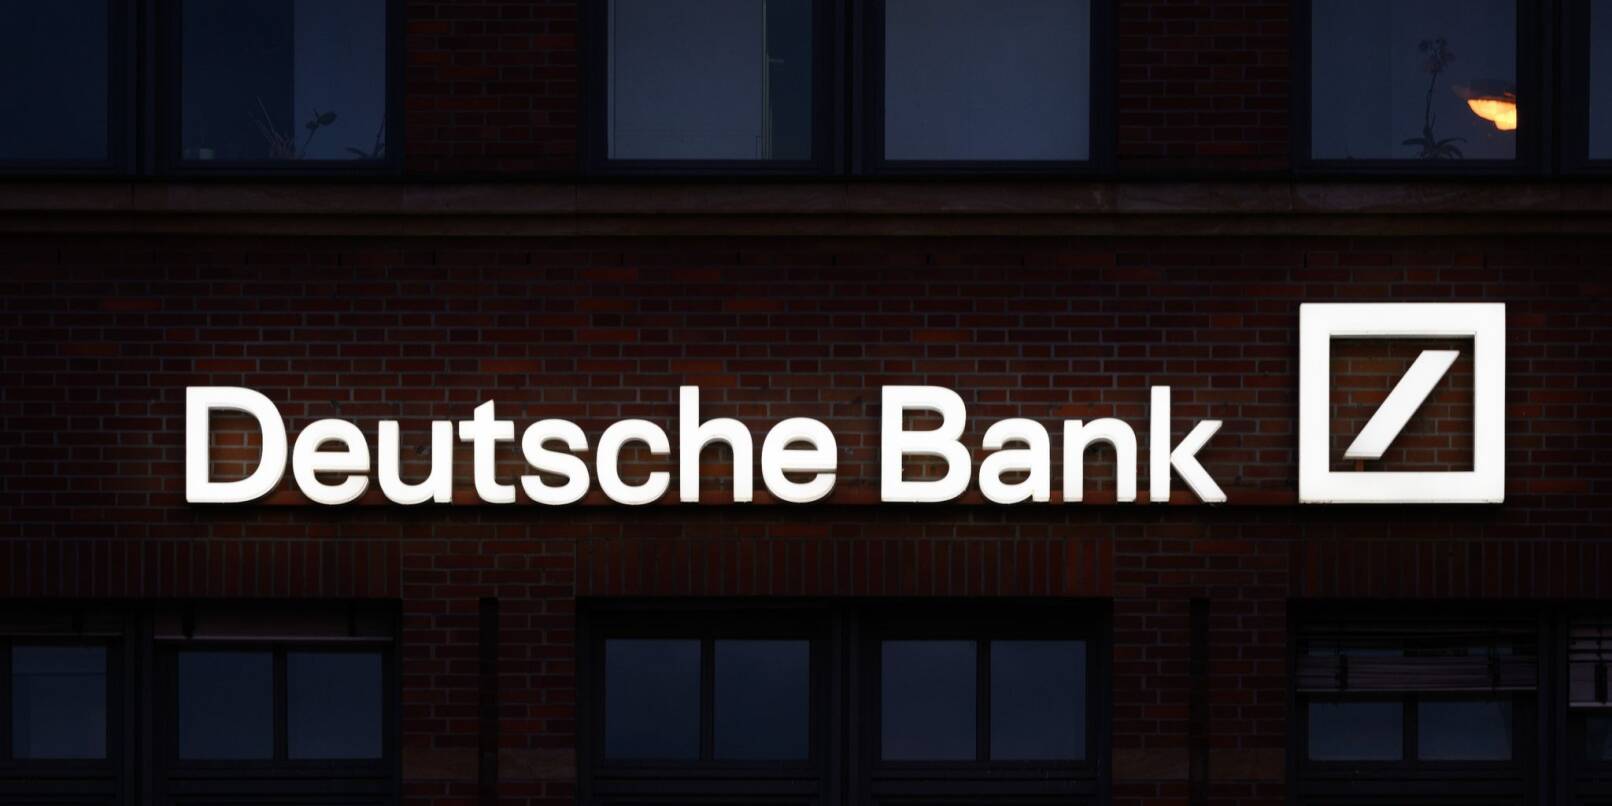 Das Logo der Deutschen Bank leuchtet an einer Filiale.